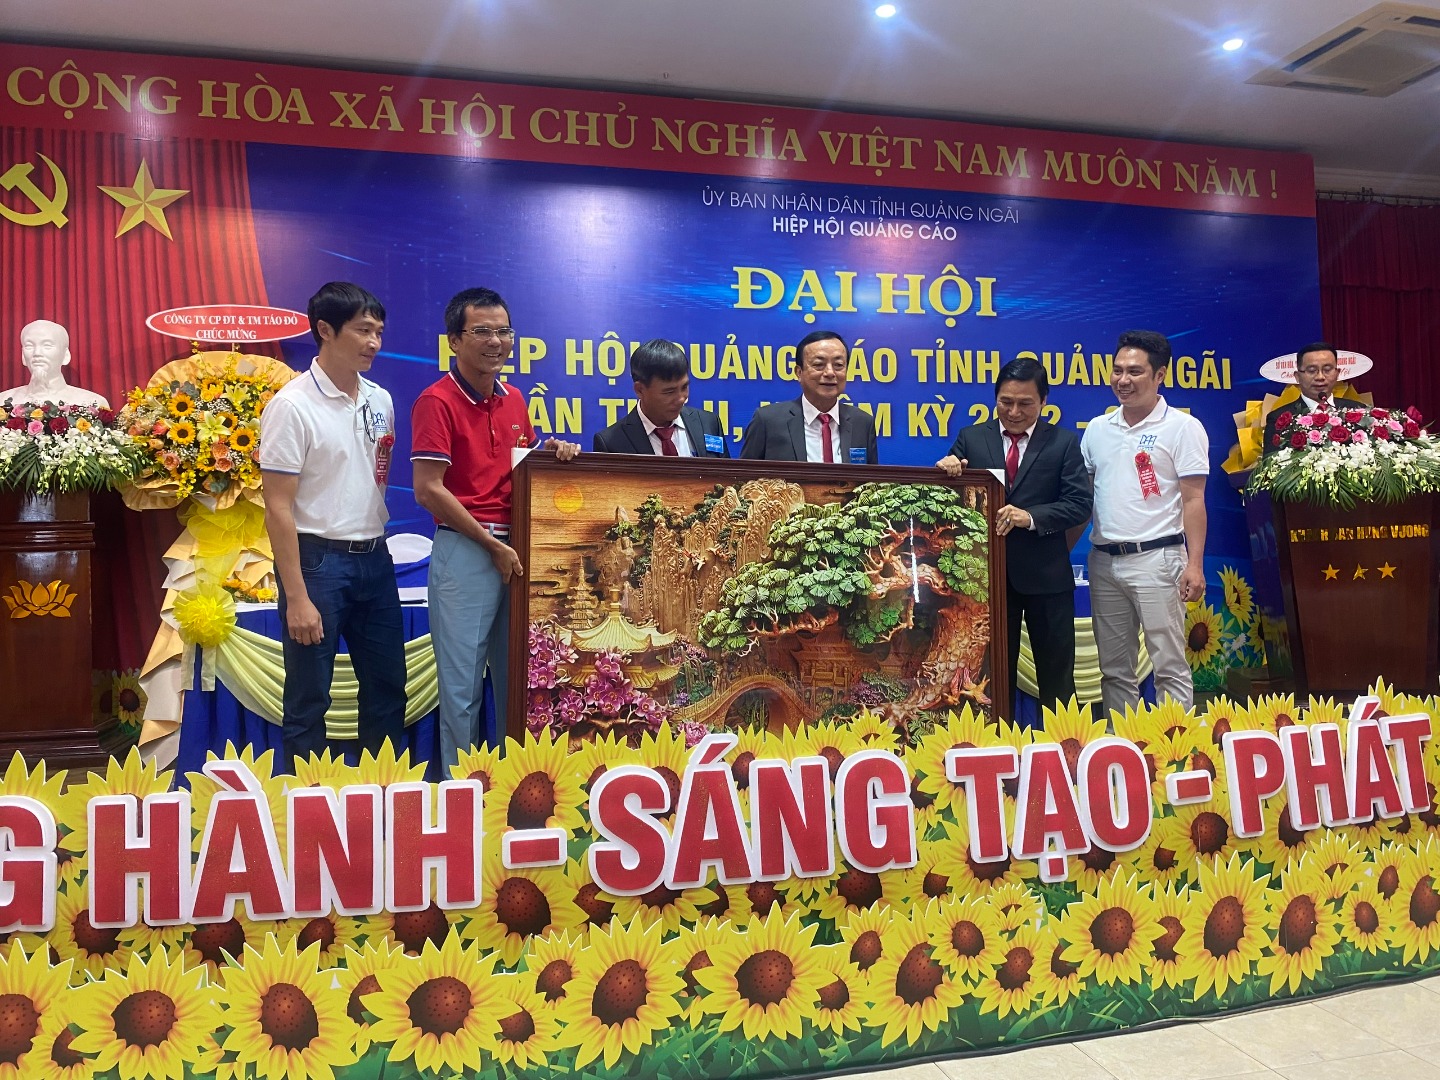 Đại hội HHQC tỉnh Quảng Ngãi nhiệm kỳ II (2022-2027) đã thành công tốt đẹp